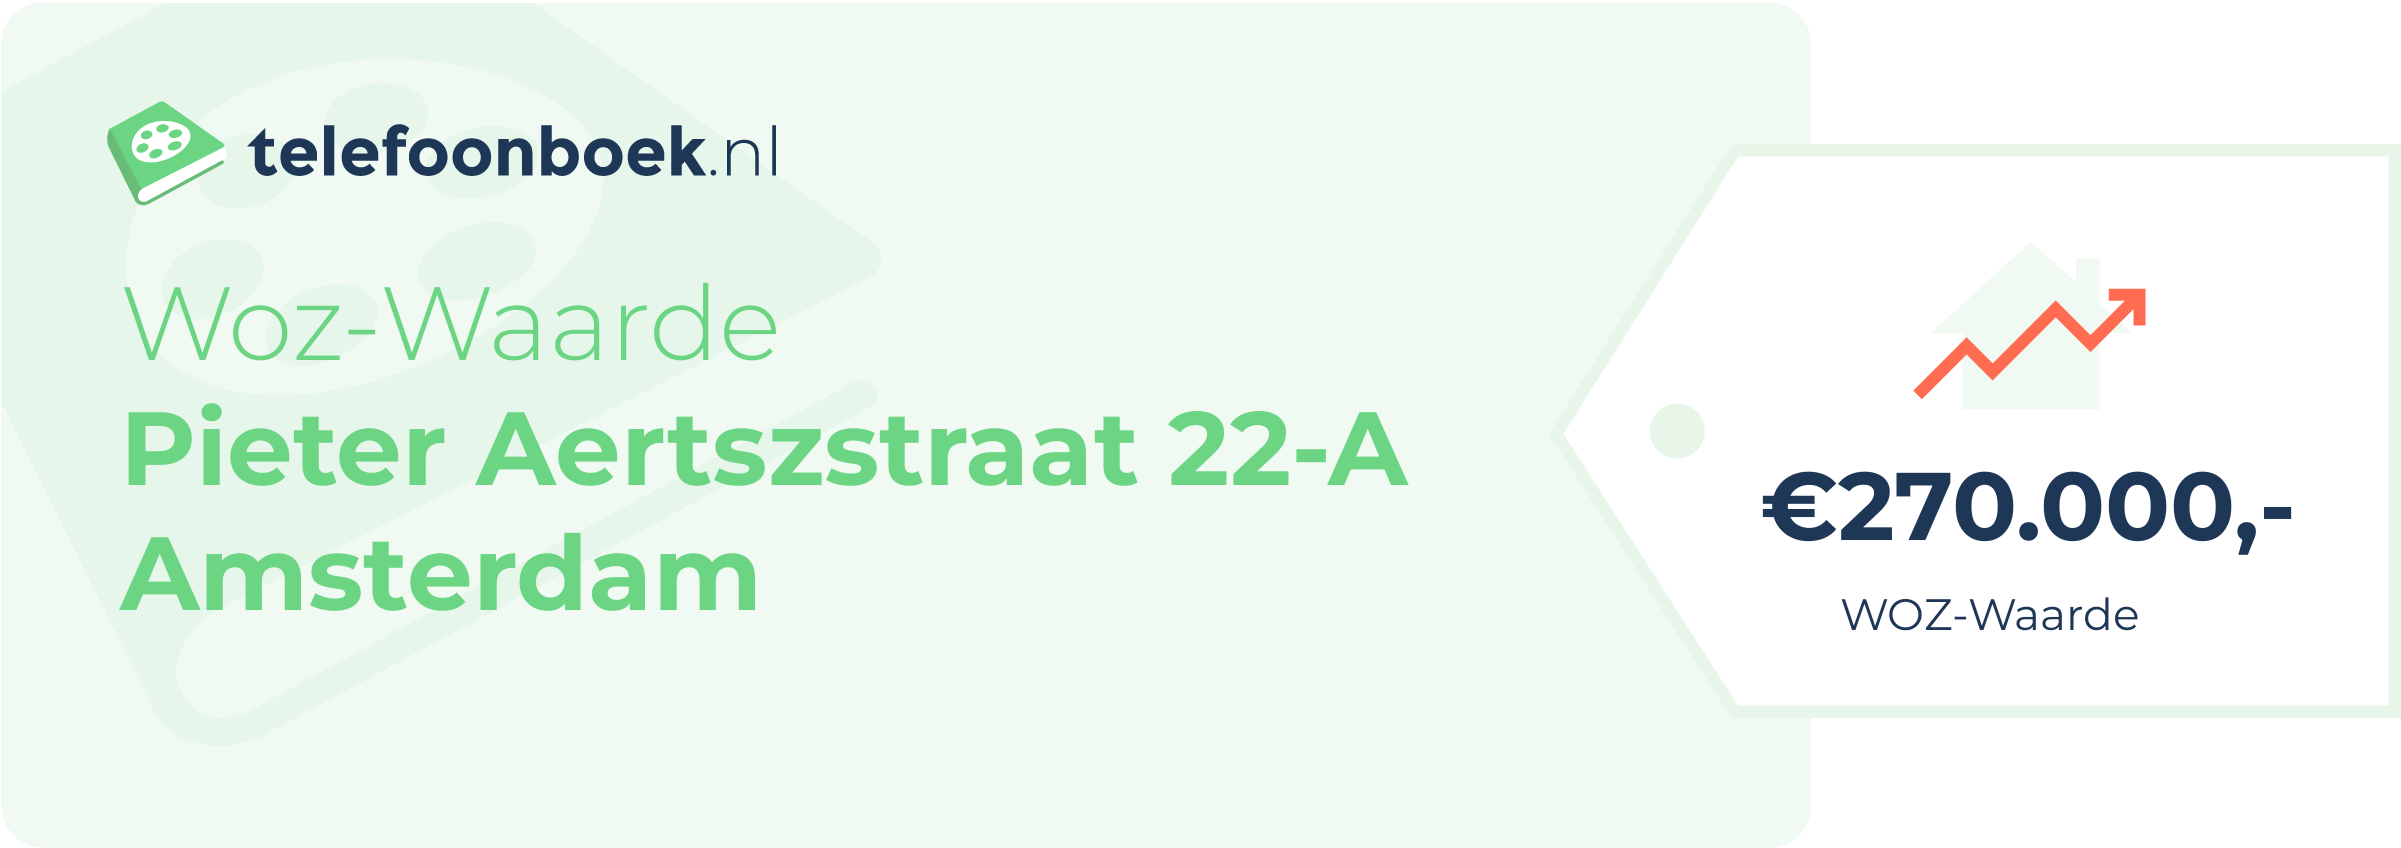 WOZ-waarde Pieter Aertszstraat 22-A Amsterdam